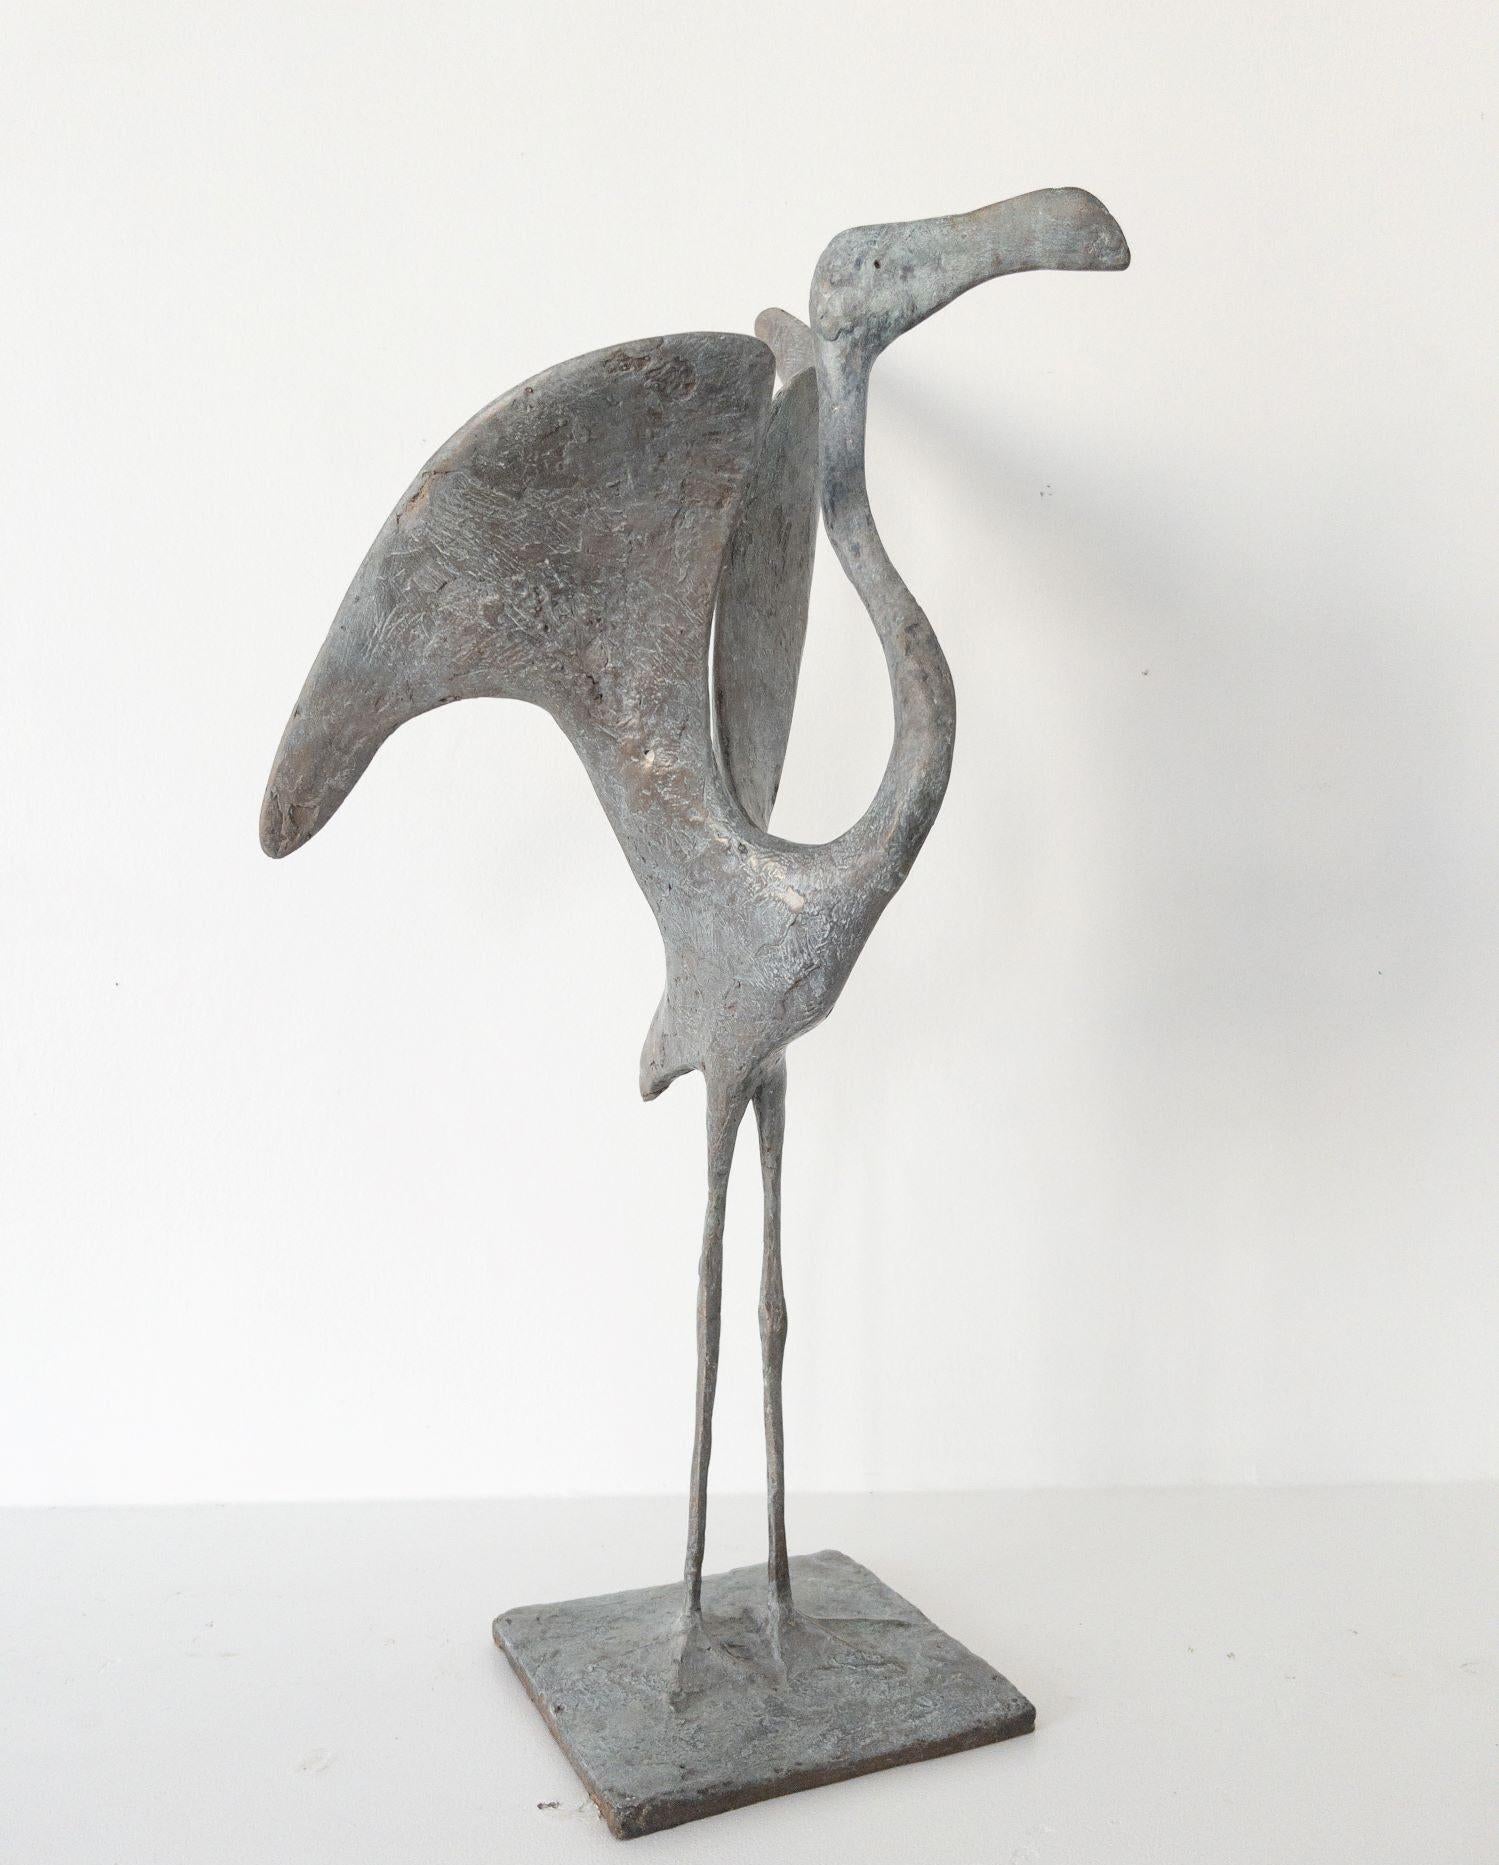 Flamingo I ist eine Bronzeskulptur des französischen zeitgenössischen Künstlers Pierre Yermia mit den Maßen 61 × 33 × 31 cm (24 × 13 × 12,2 Zoll). 
Die Skulptur ist signiert und nummeriert, gehört zu einer limitierten Auflage von 8 Exemplaren + 4